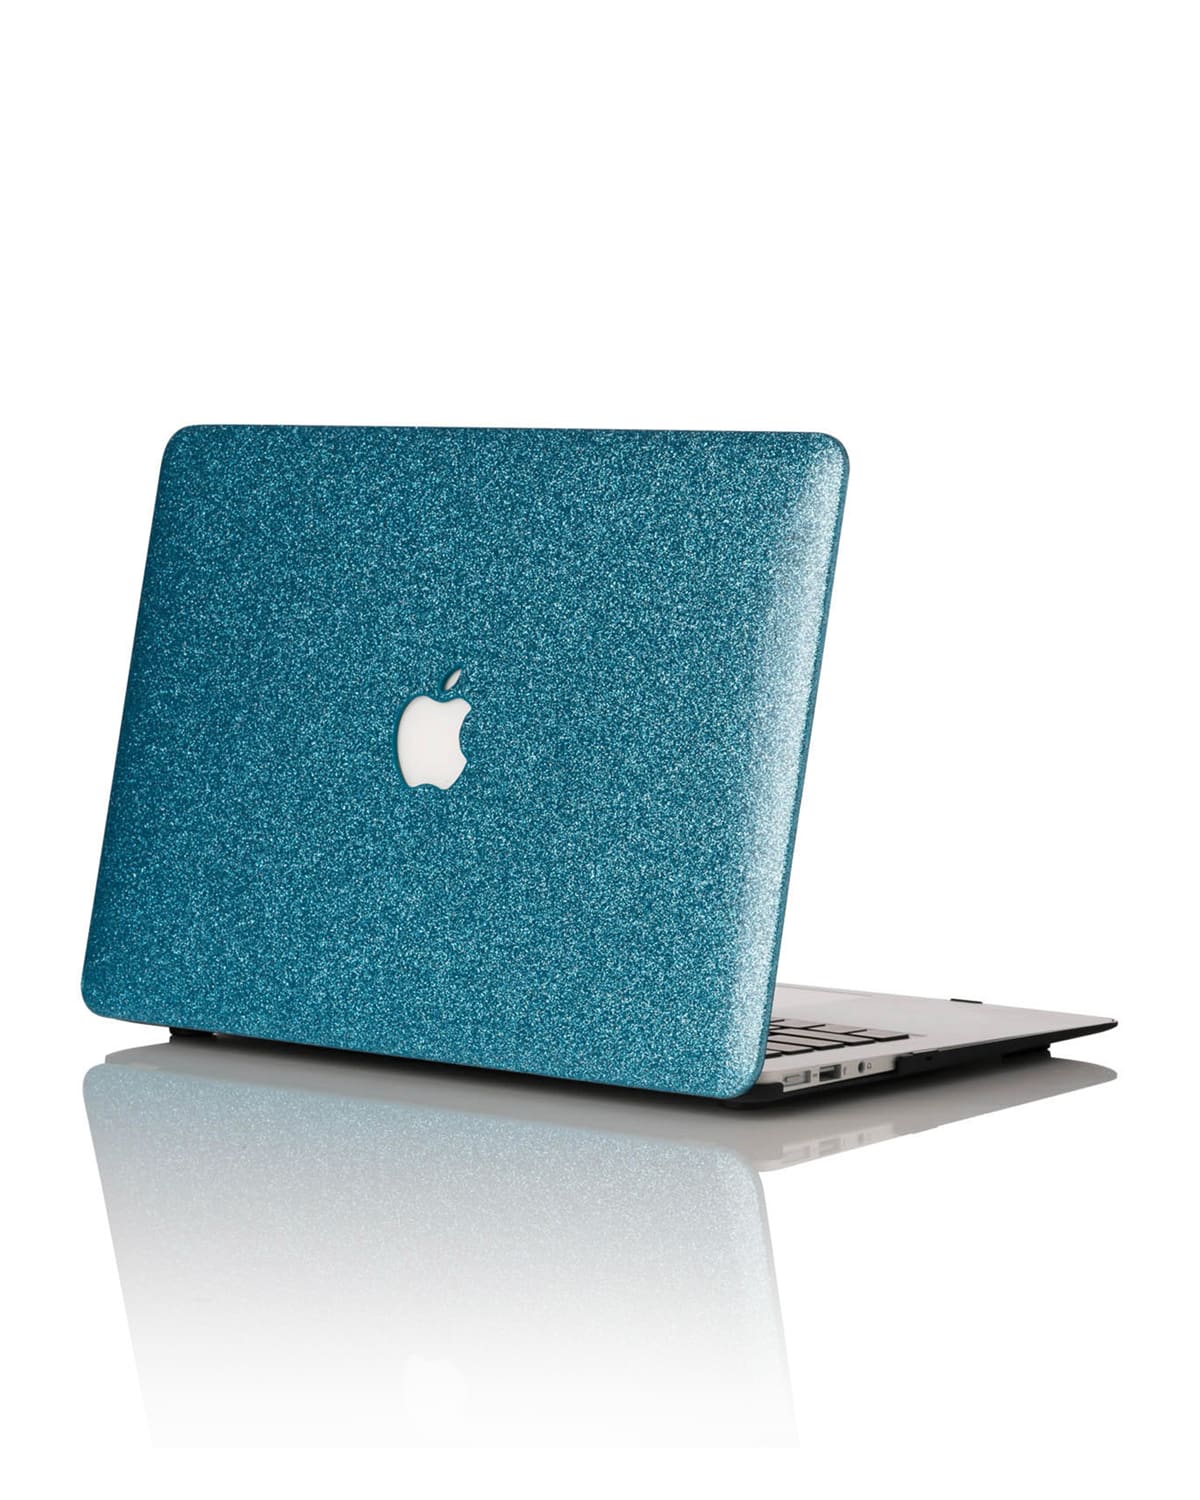 Glitter 15" MacBook Pro with TouchBar Case